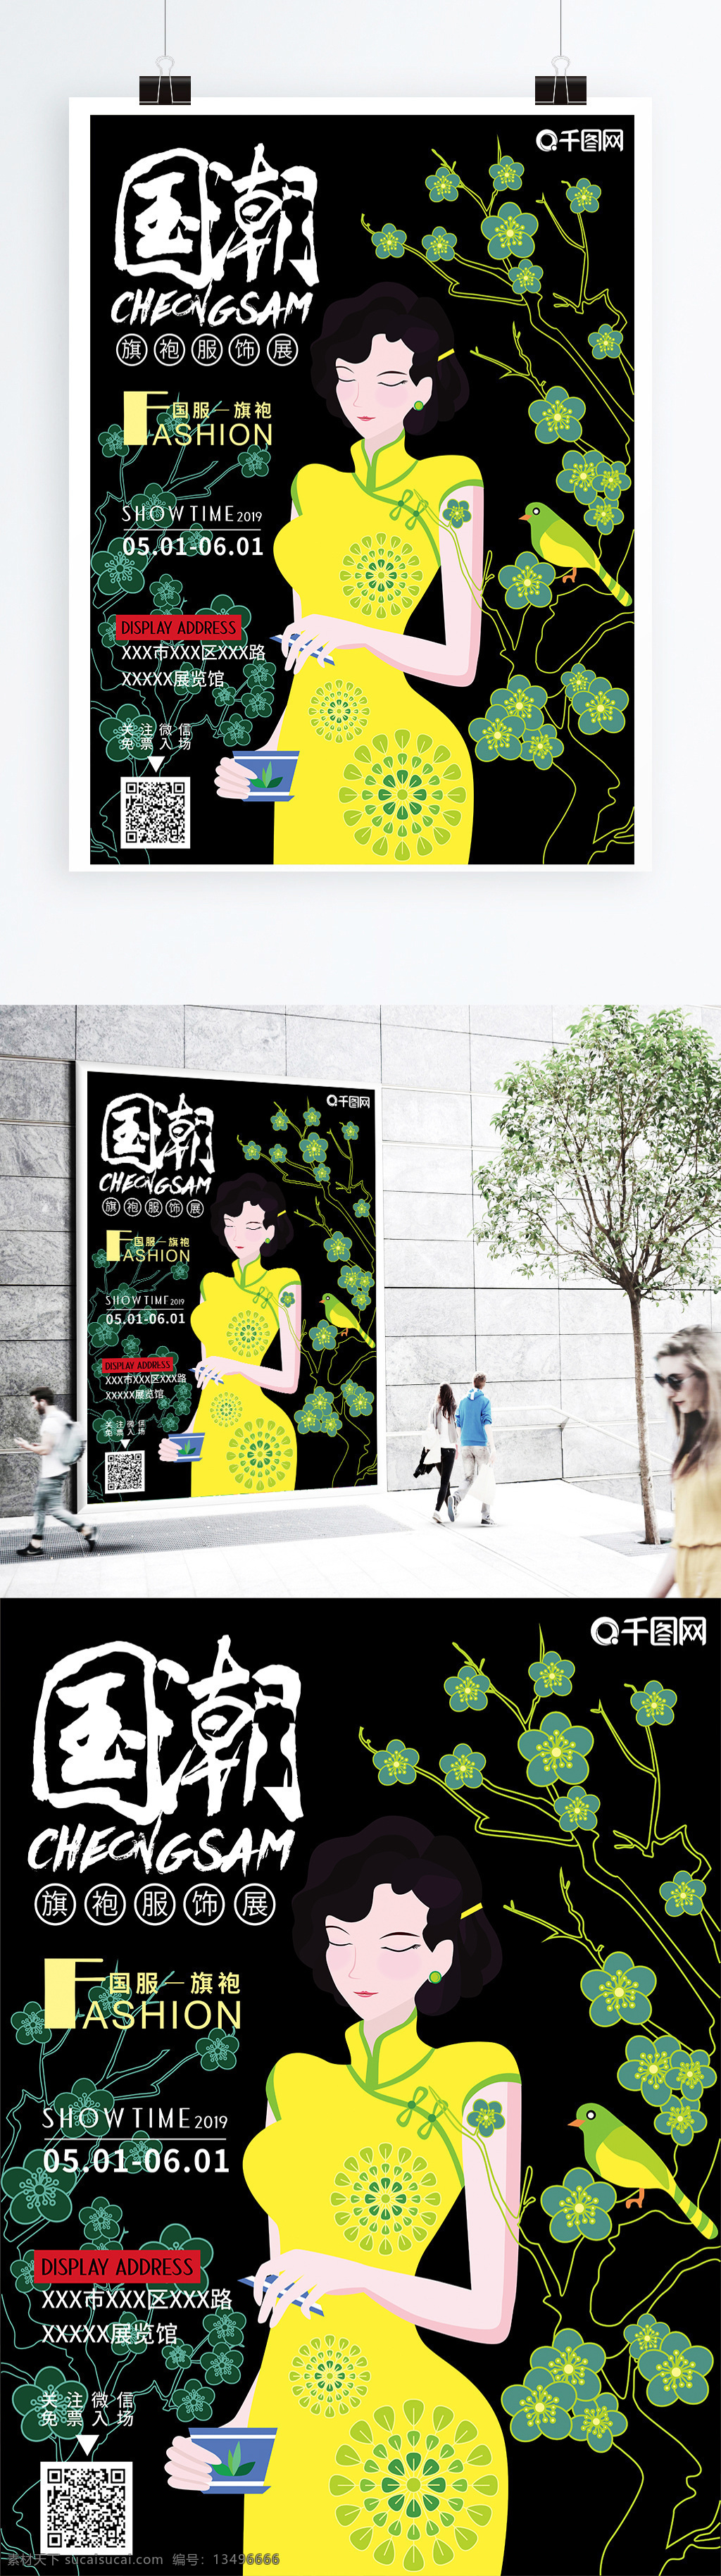 手绘 黑色 国 风格 旗袍 海报 宣传单 黑色背景 女人 国服 花 展览 服装 时尚 中国风格 特色